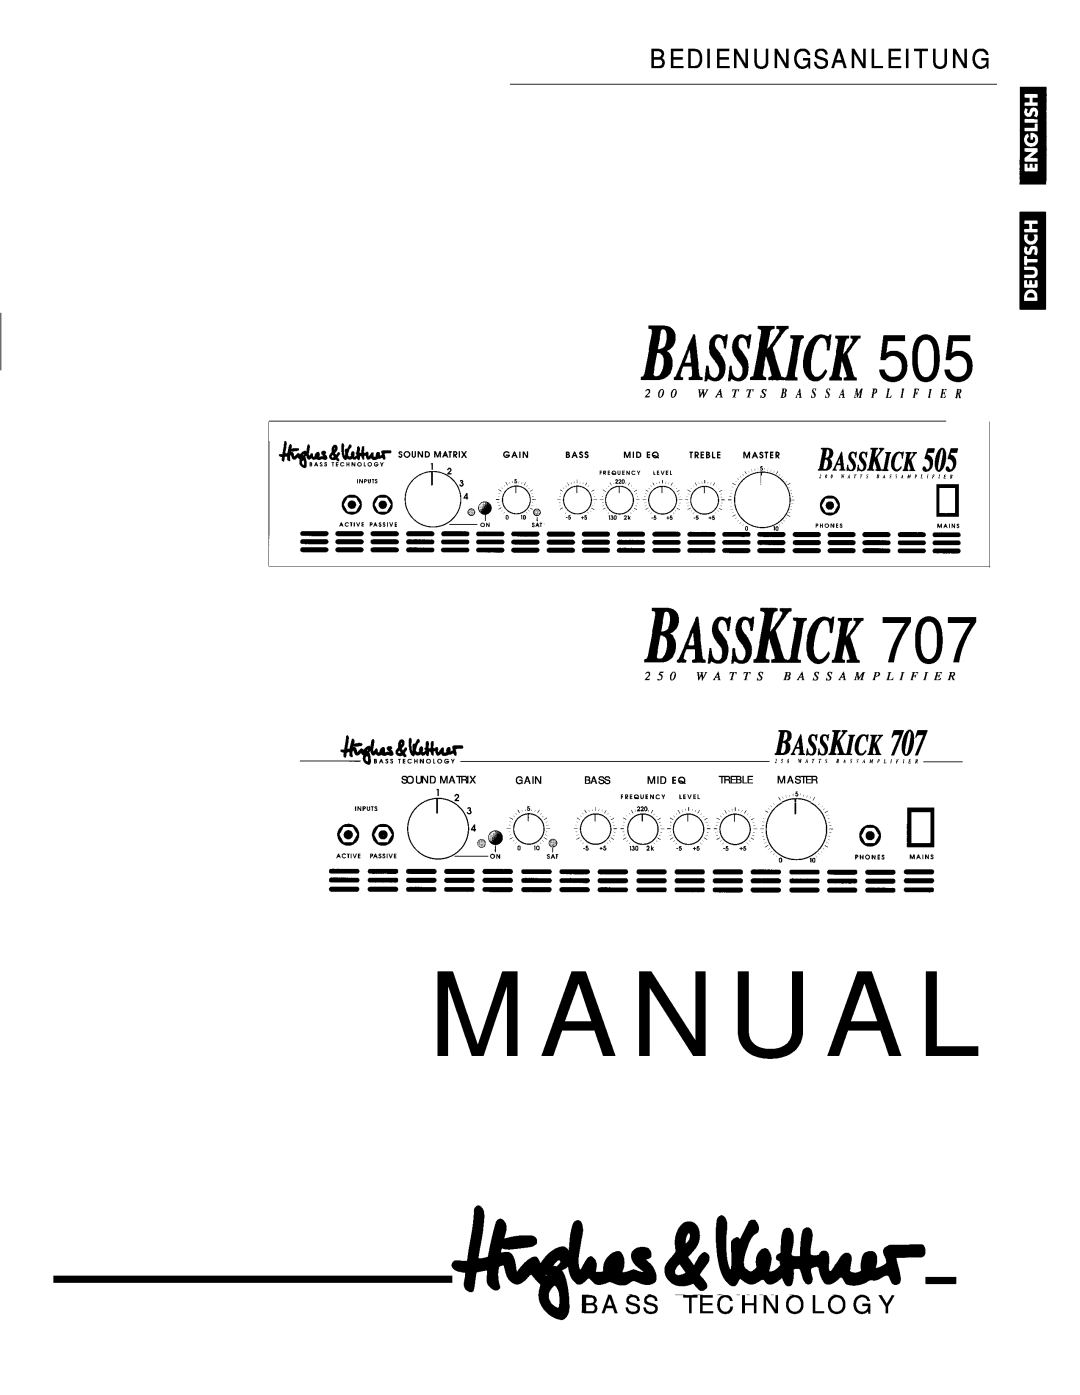 Hughes & Kettner Bass Kick 707 manual Manual, Bassiuck, Basskick, Bedienungsanleitung, B A S S T E C H N O L O G Y 